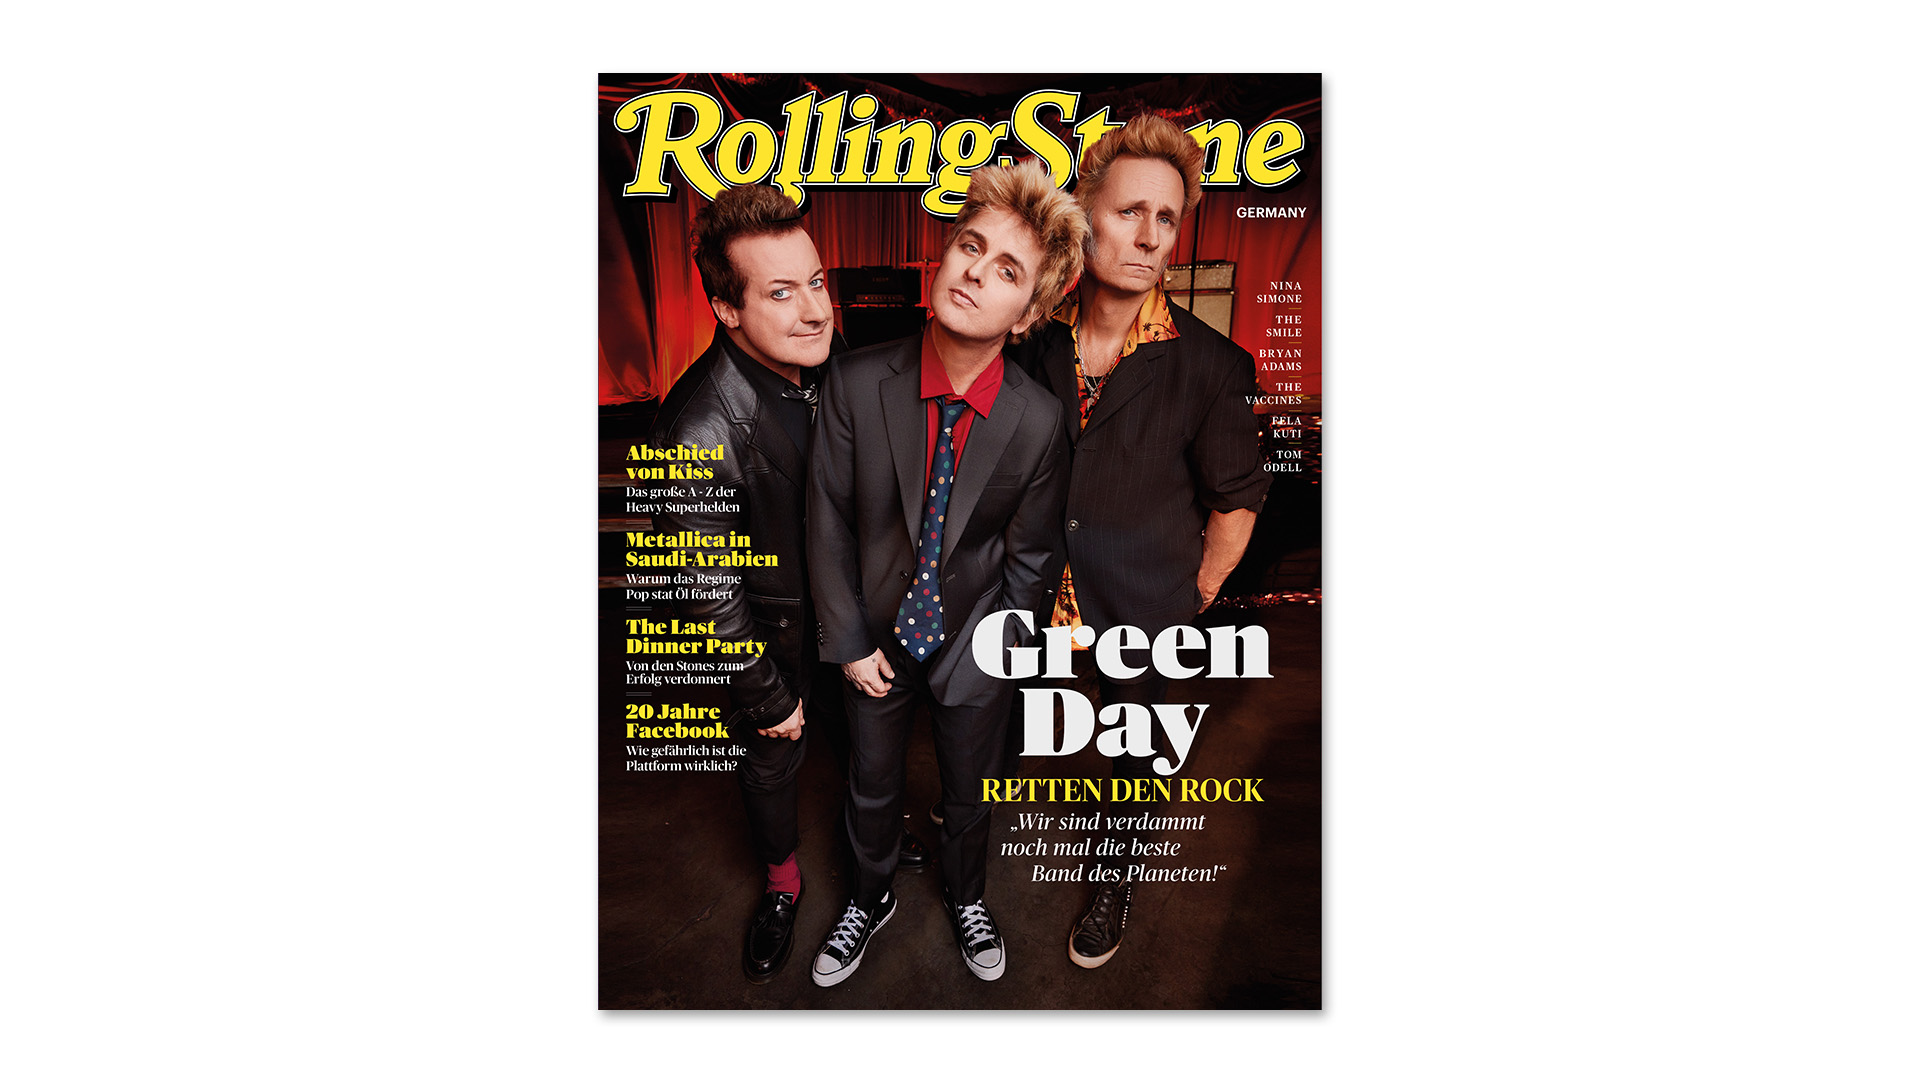 Das Cover der Februar-Ausgabe des ROLLING STONE mit Green Day